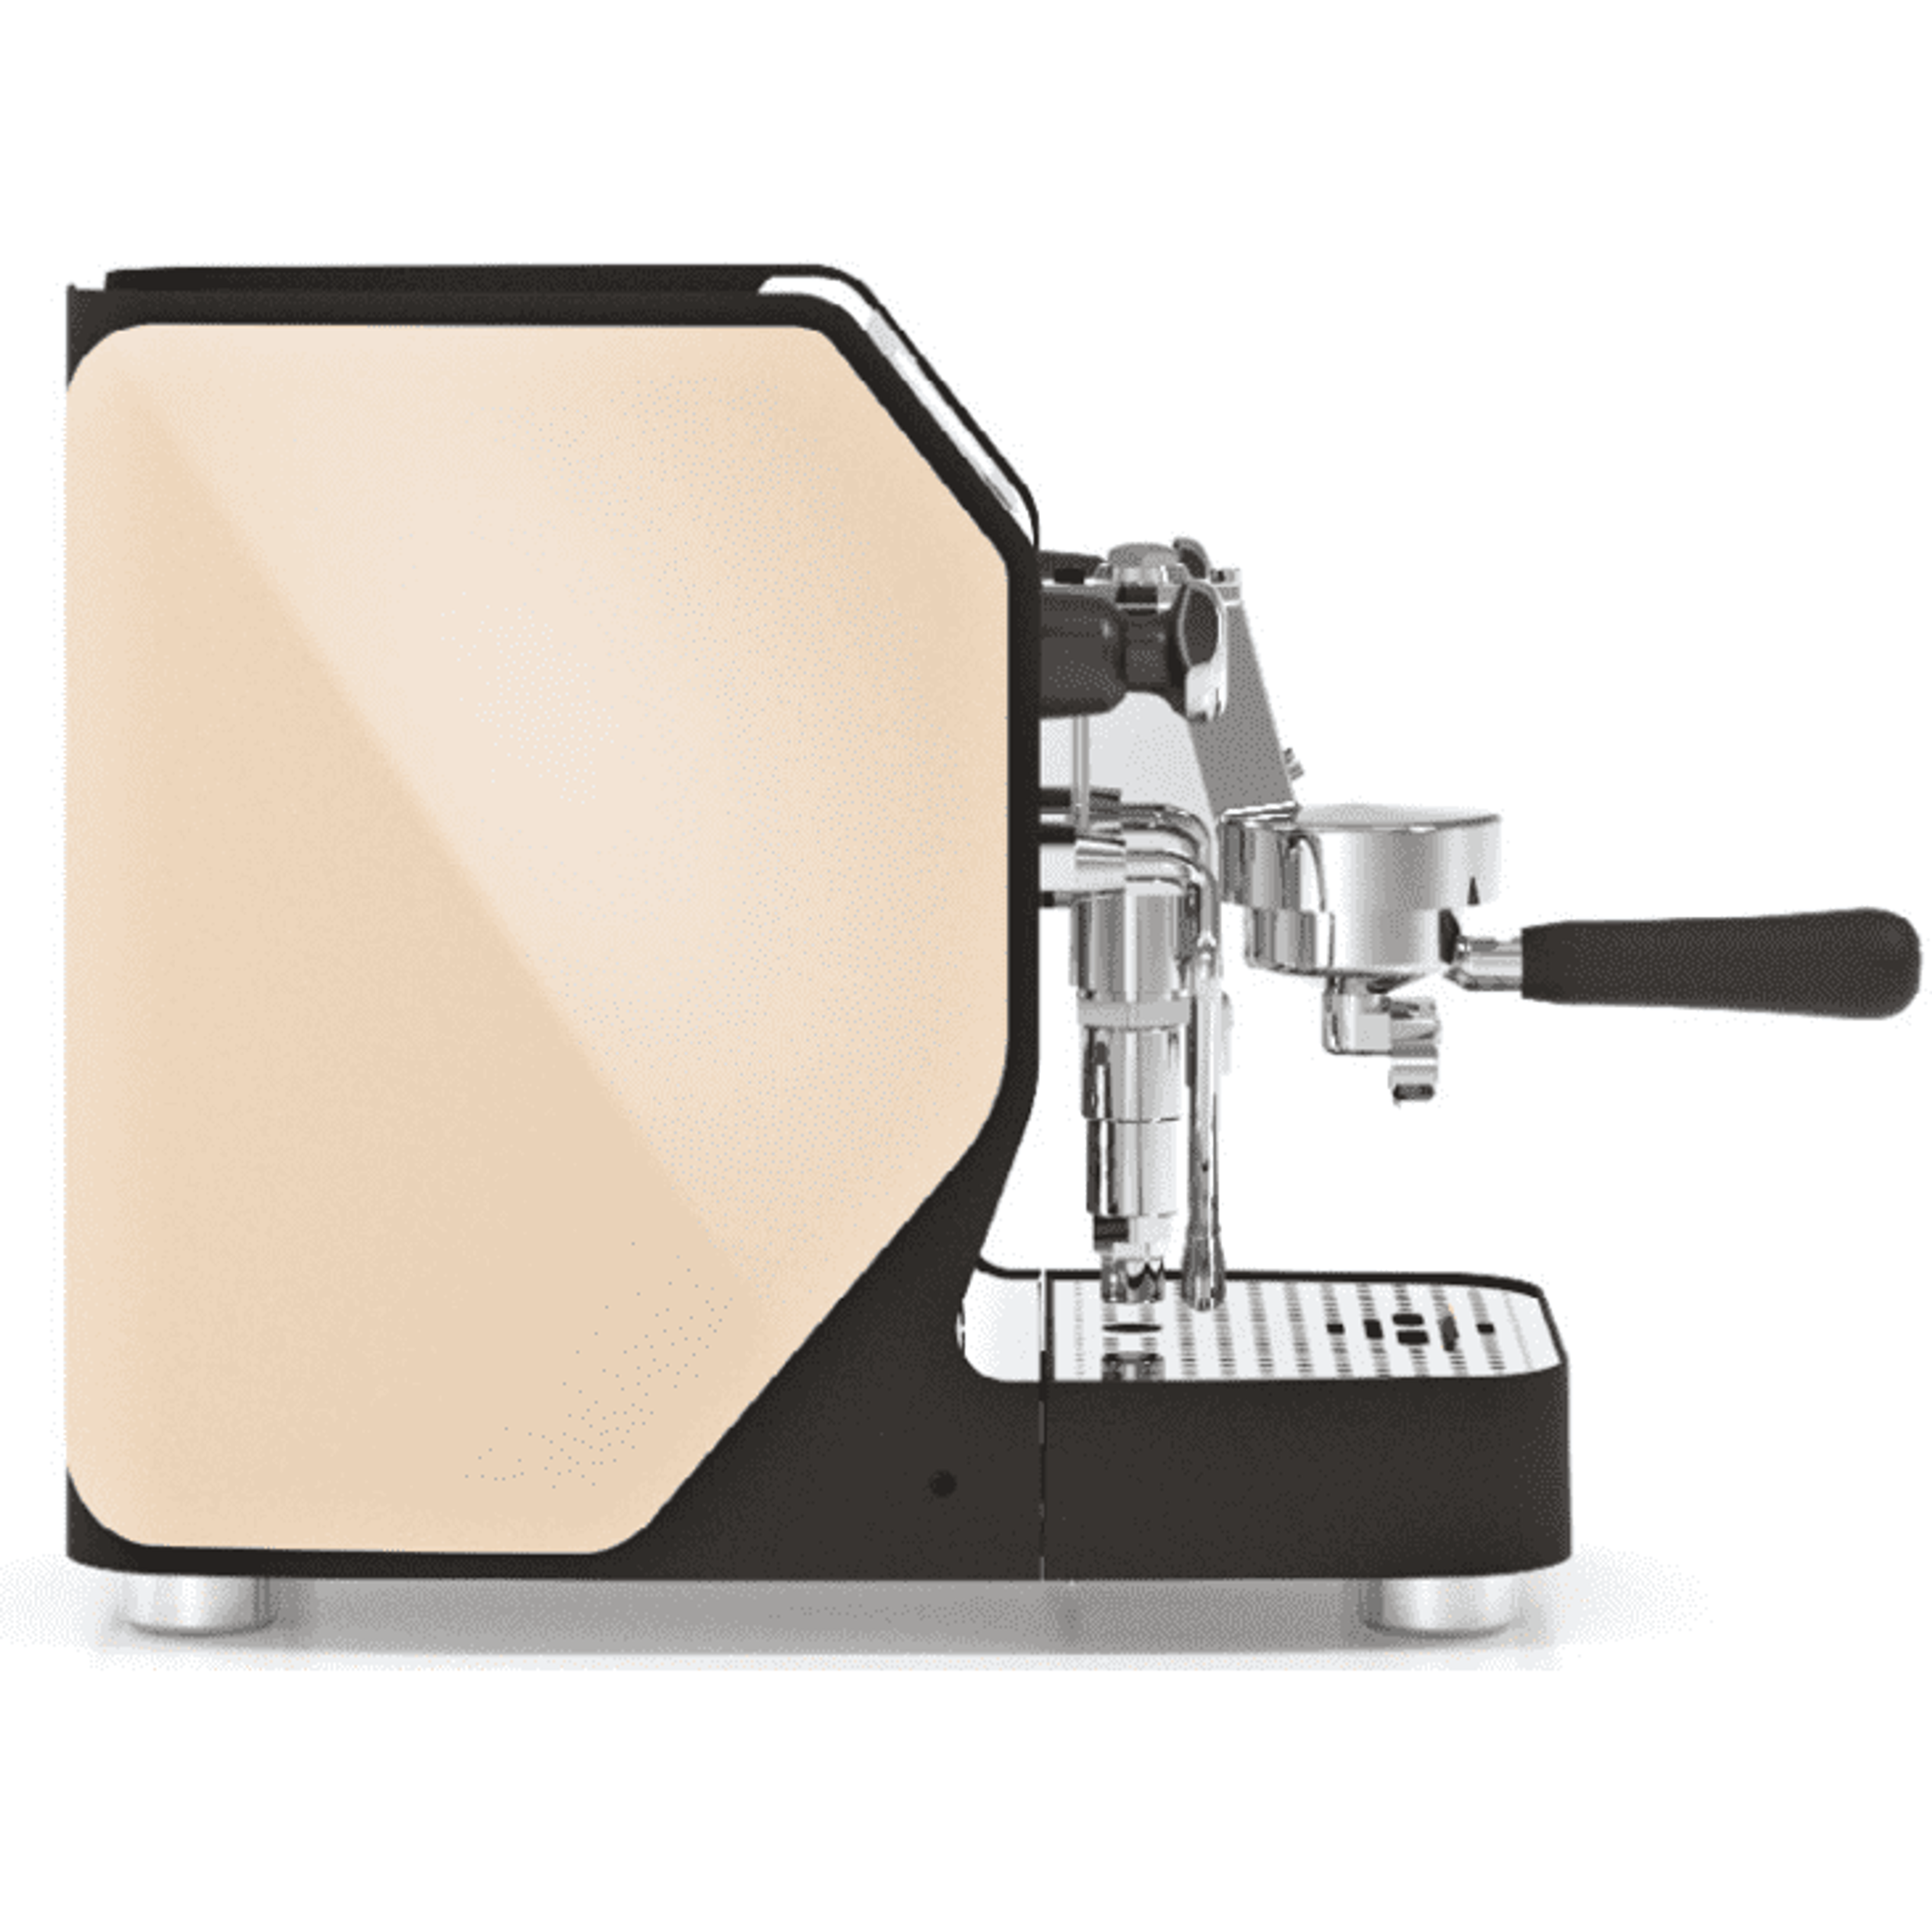 Vibiemme VBM New DOMOBAR Super Digital - Druckprofile, Dualboiler, Getriebepumpe, verschiedene Farben Espressomaschinen VBM Beige   - Rheinland.Coffee